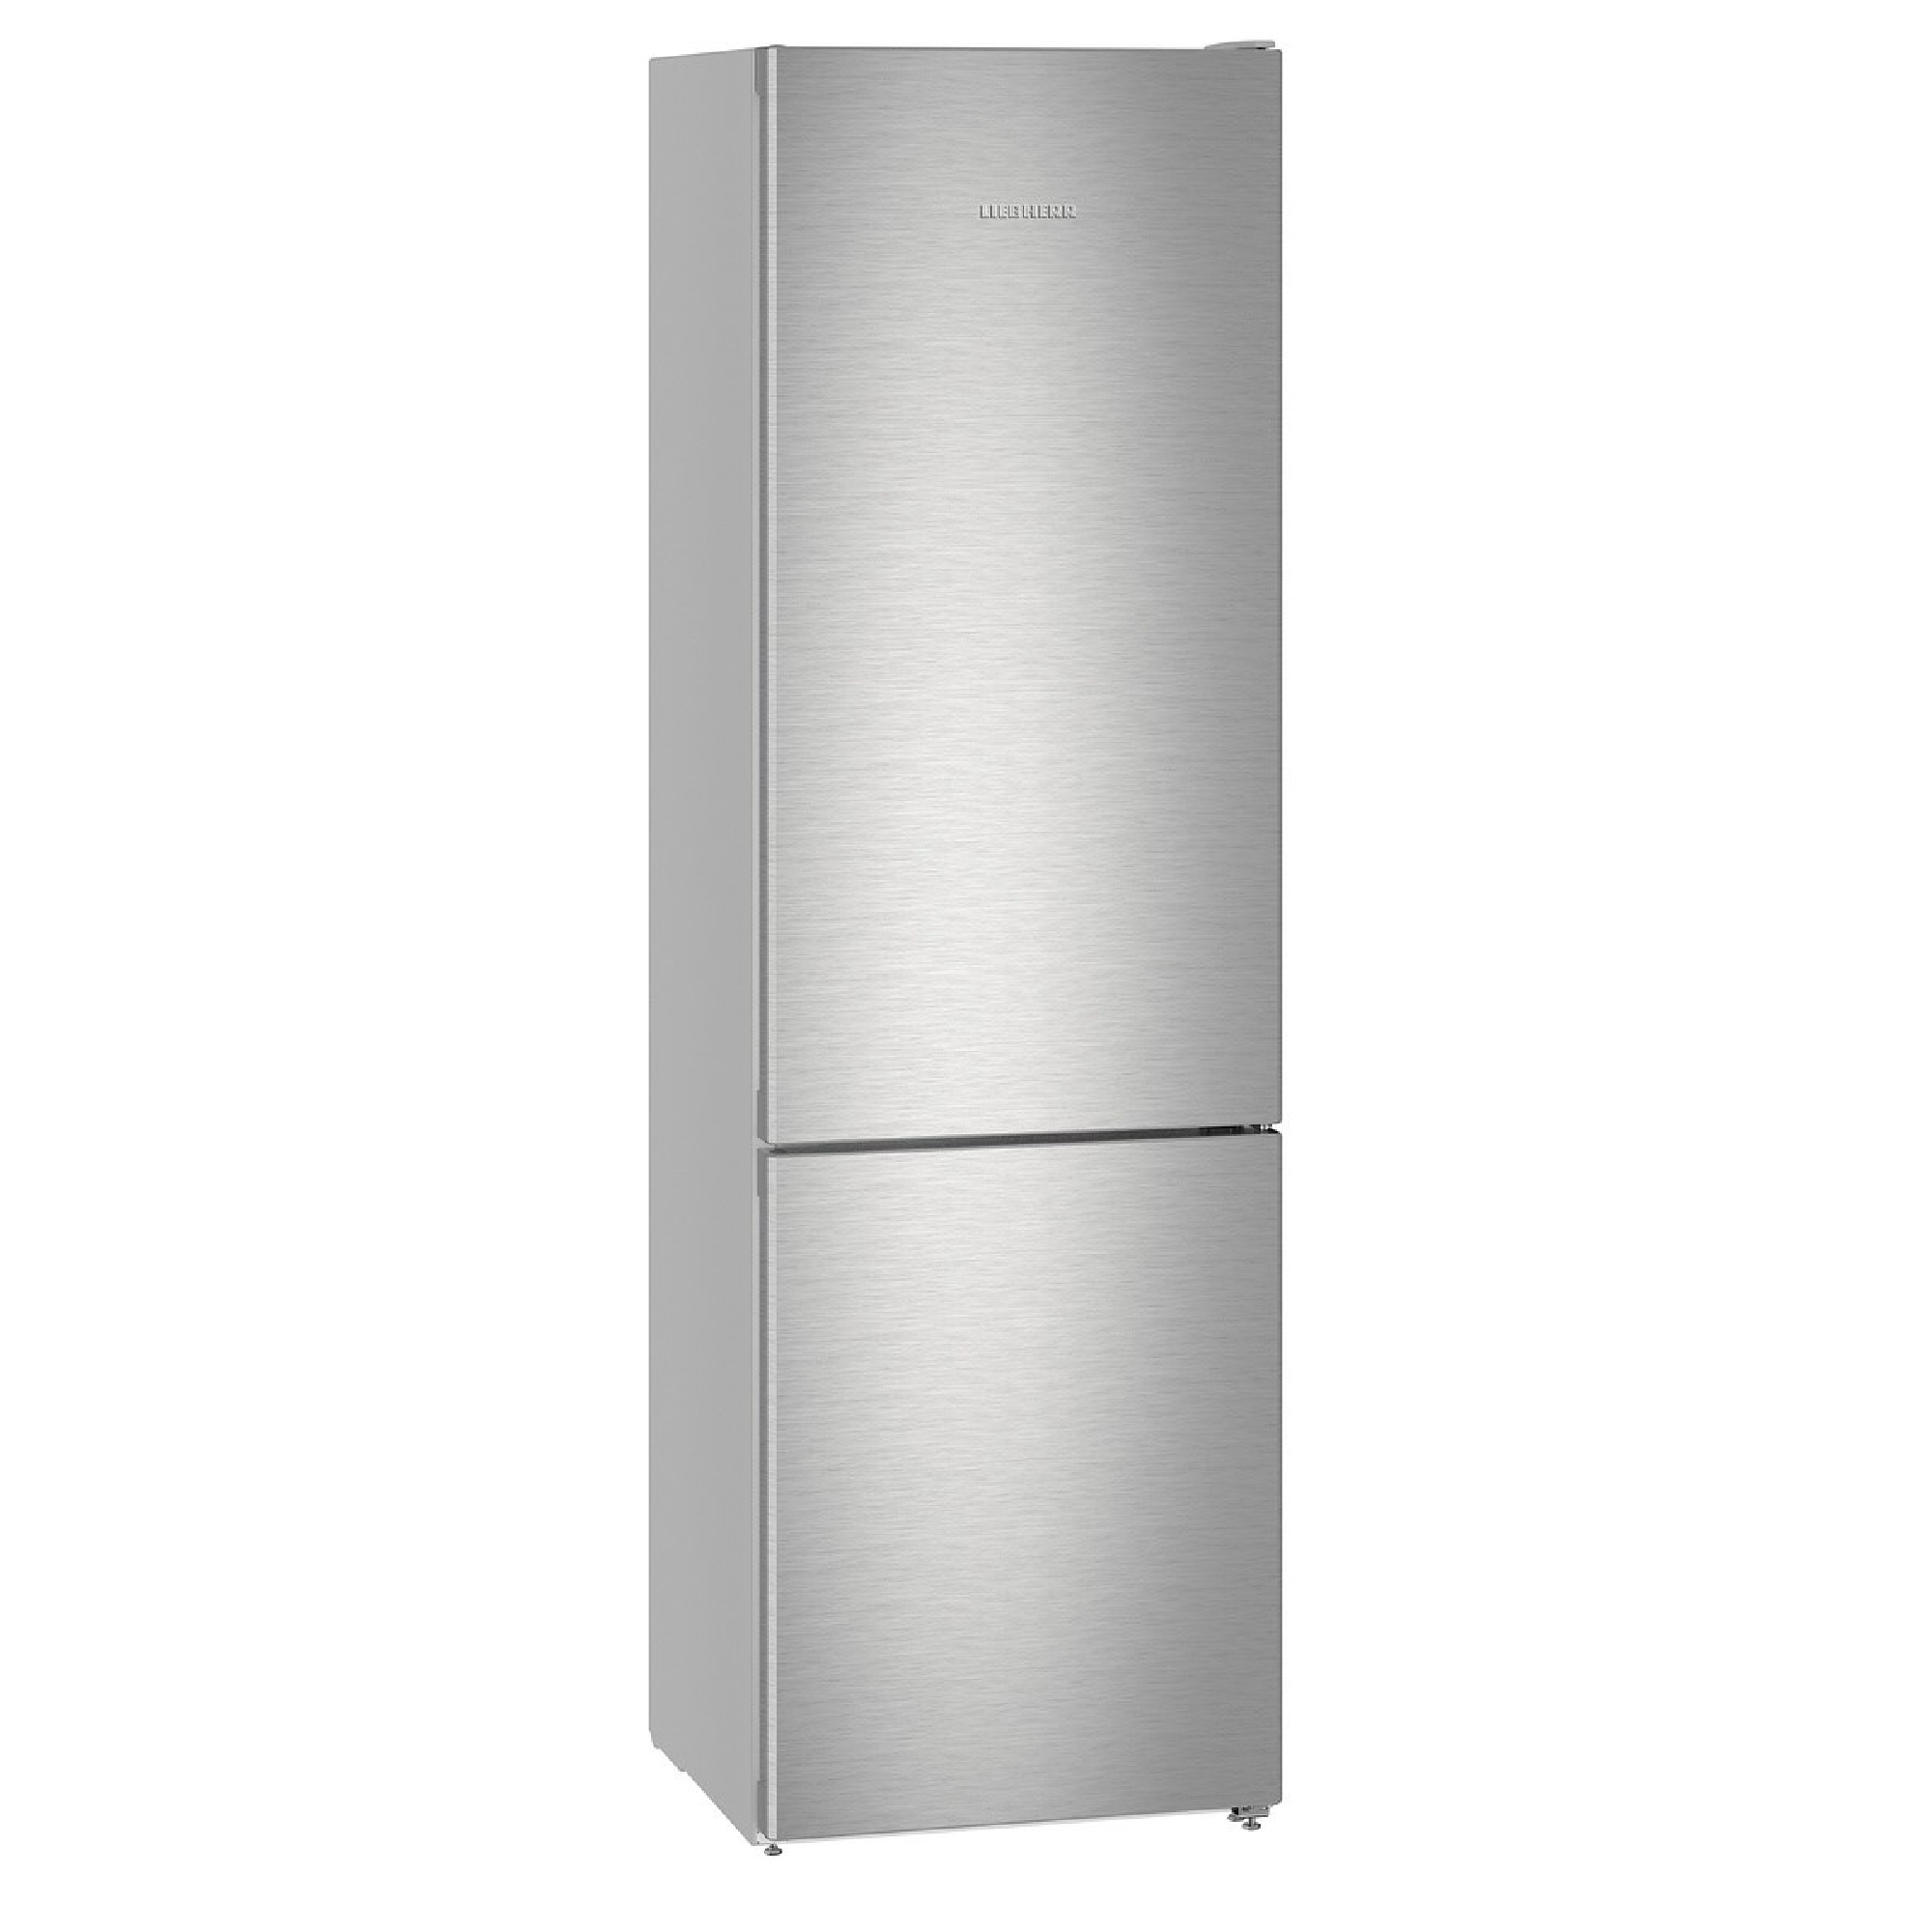 Спб купить холодильник недорого двухкамерный. Холодильник Liebherr CNEF 4825. Холодильник Liebherr CUSL 2915. Холодильник Liebherr cbnef5735. Холодильник ATLANT хм 4423-080 n.